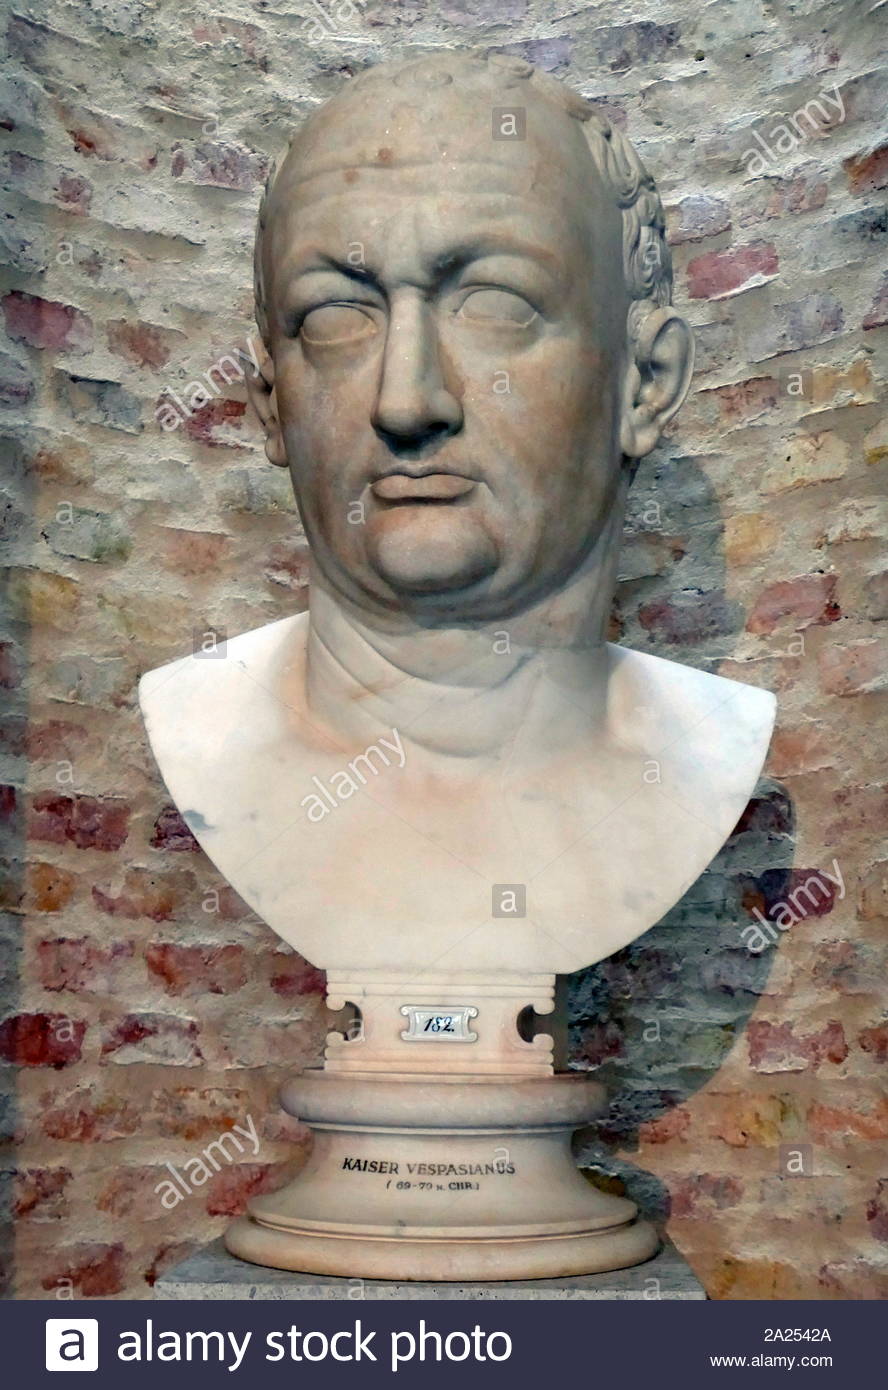 Vespasien ( AD 9 - 23 79 AD]), empereur romain de AD 69 à AD 79. Vespasien a fondé la dynastie des Flaviens qui a dirigé l'Empire pendant vingt-sept ans. Banque D'Images